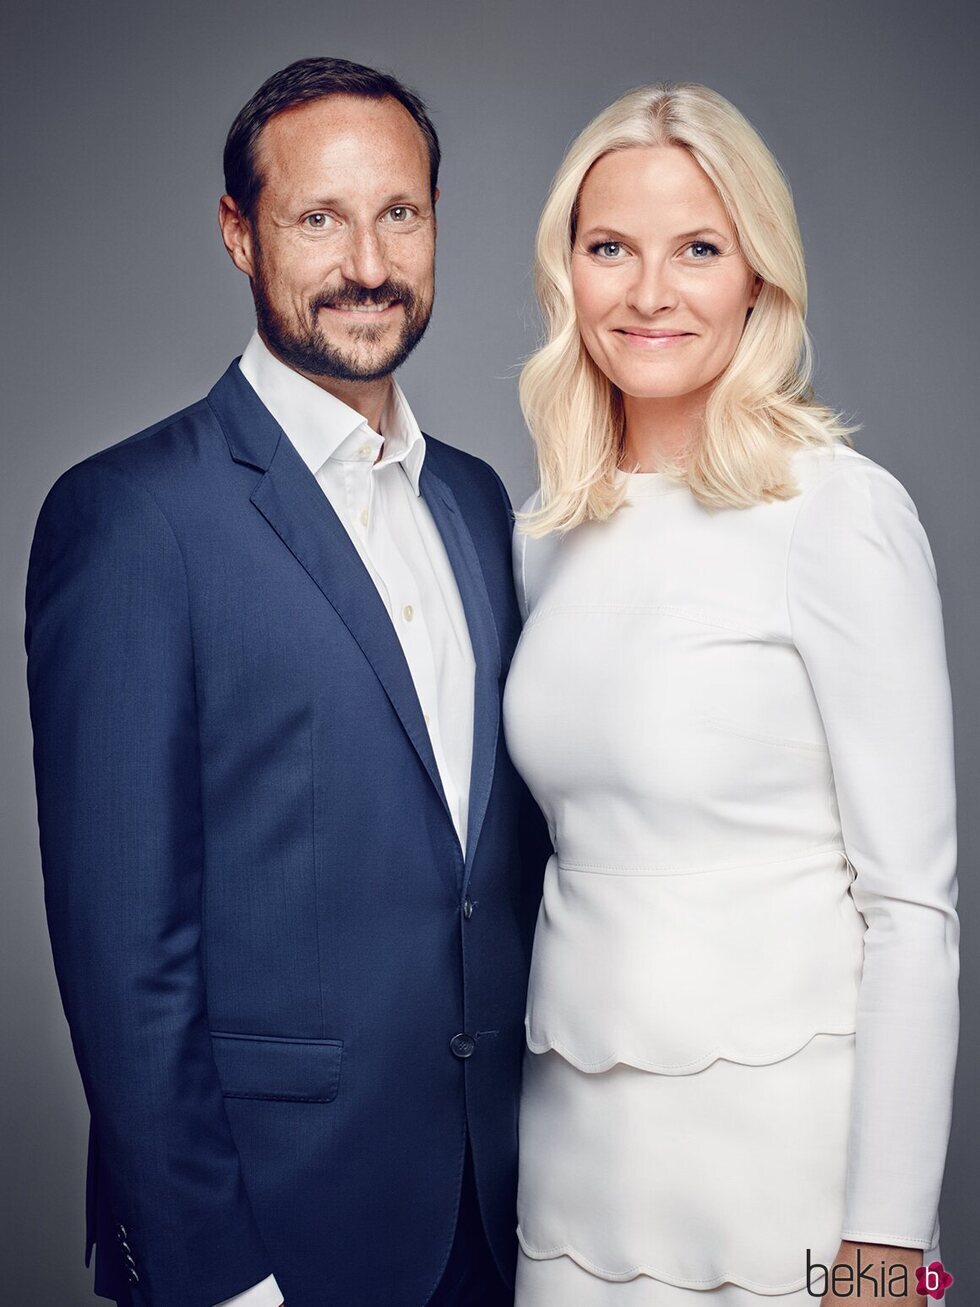 Haakon y Mette-Marit de Noruega en un retrato oficial